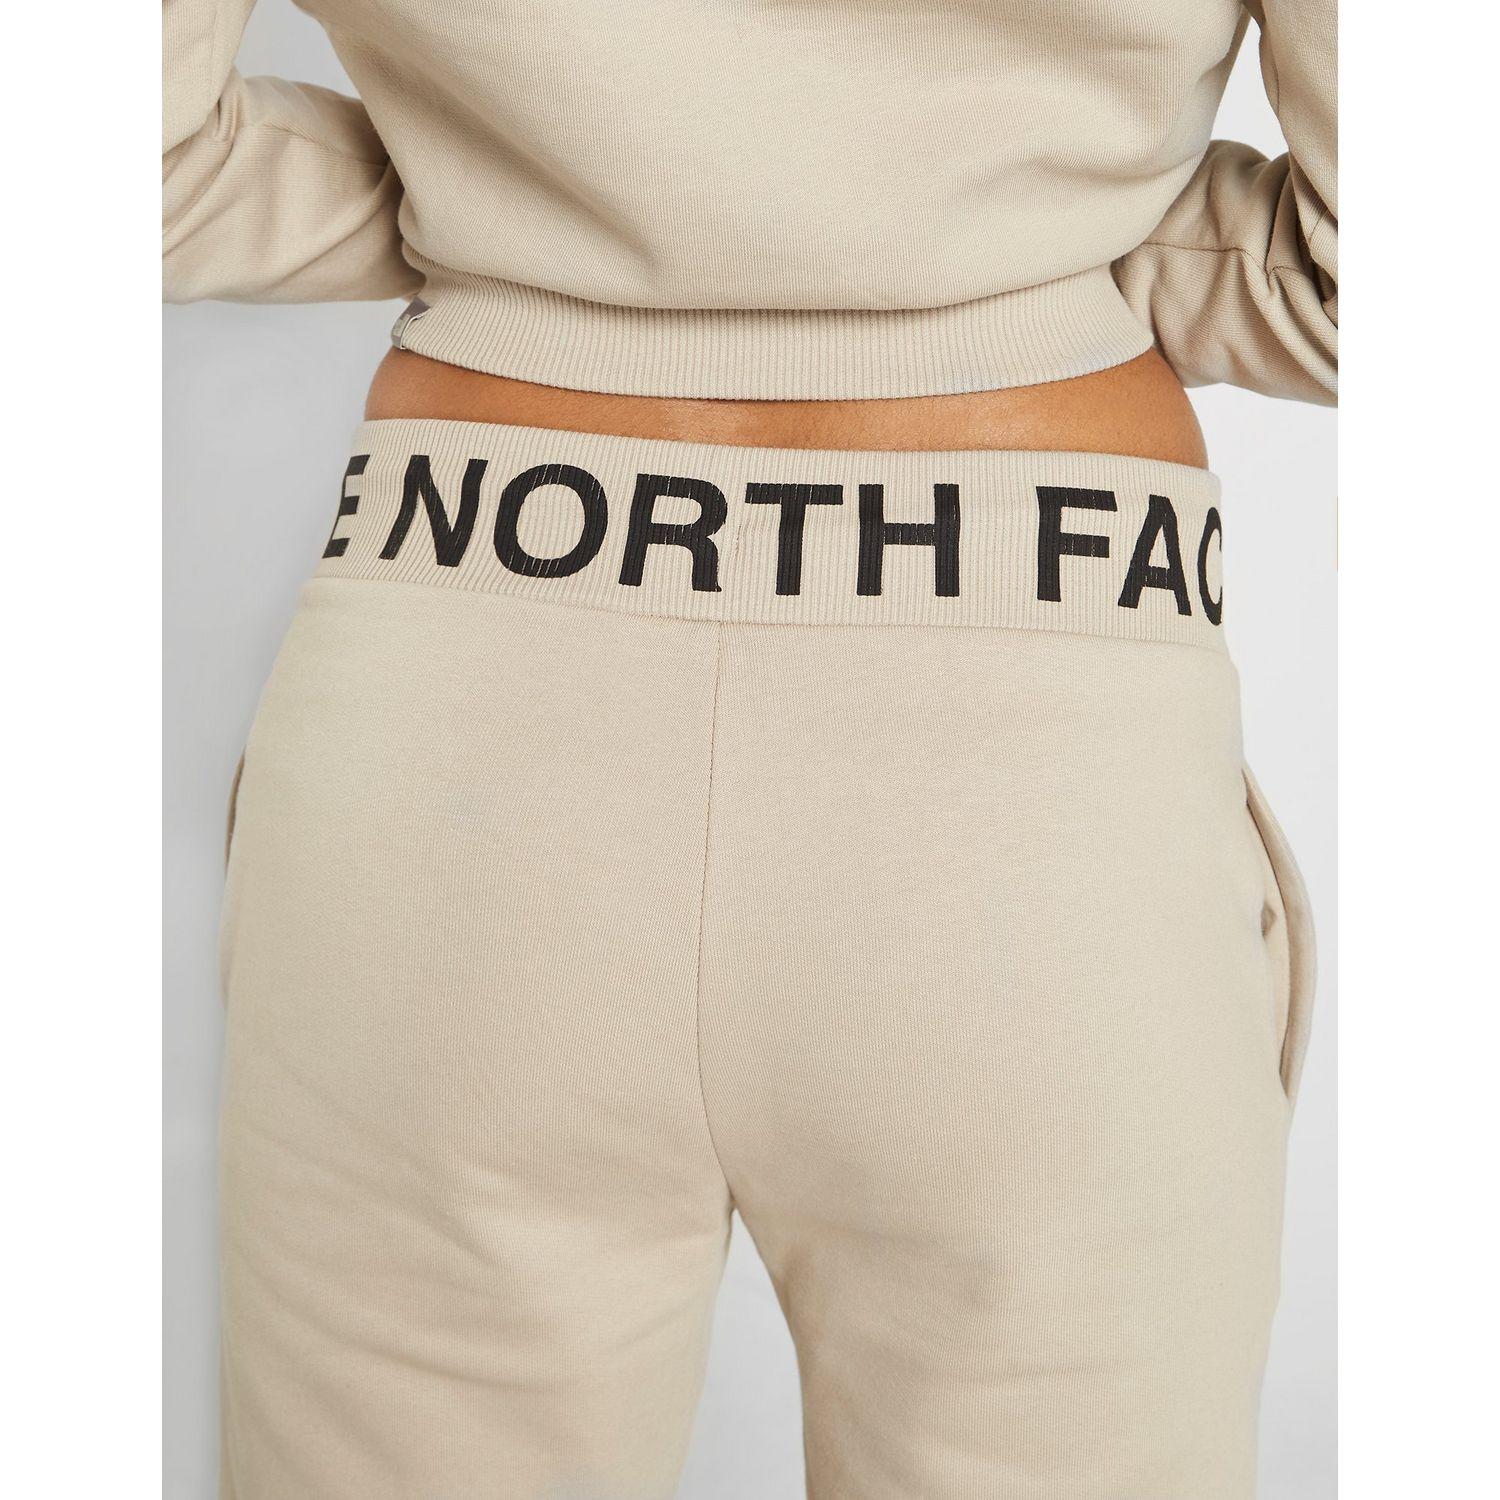 the north face ribbed logo pants